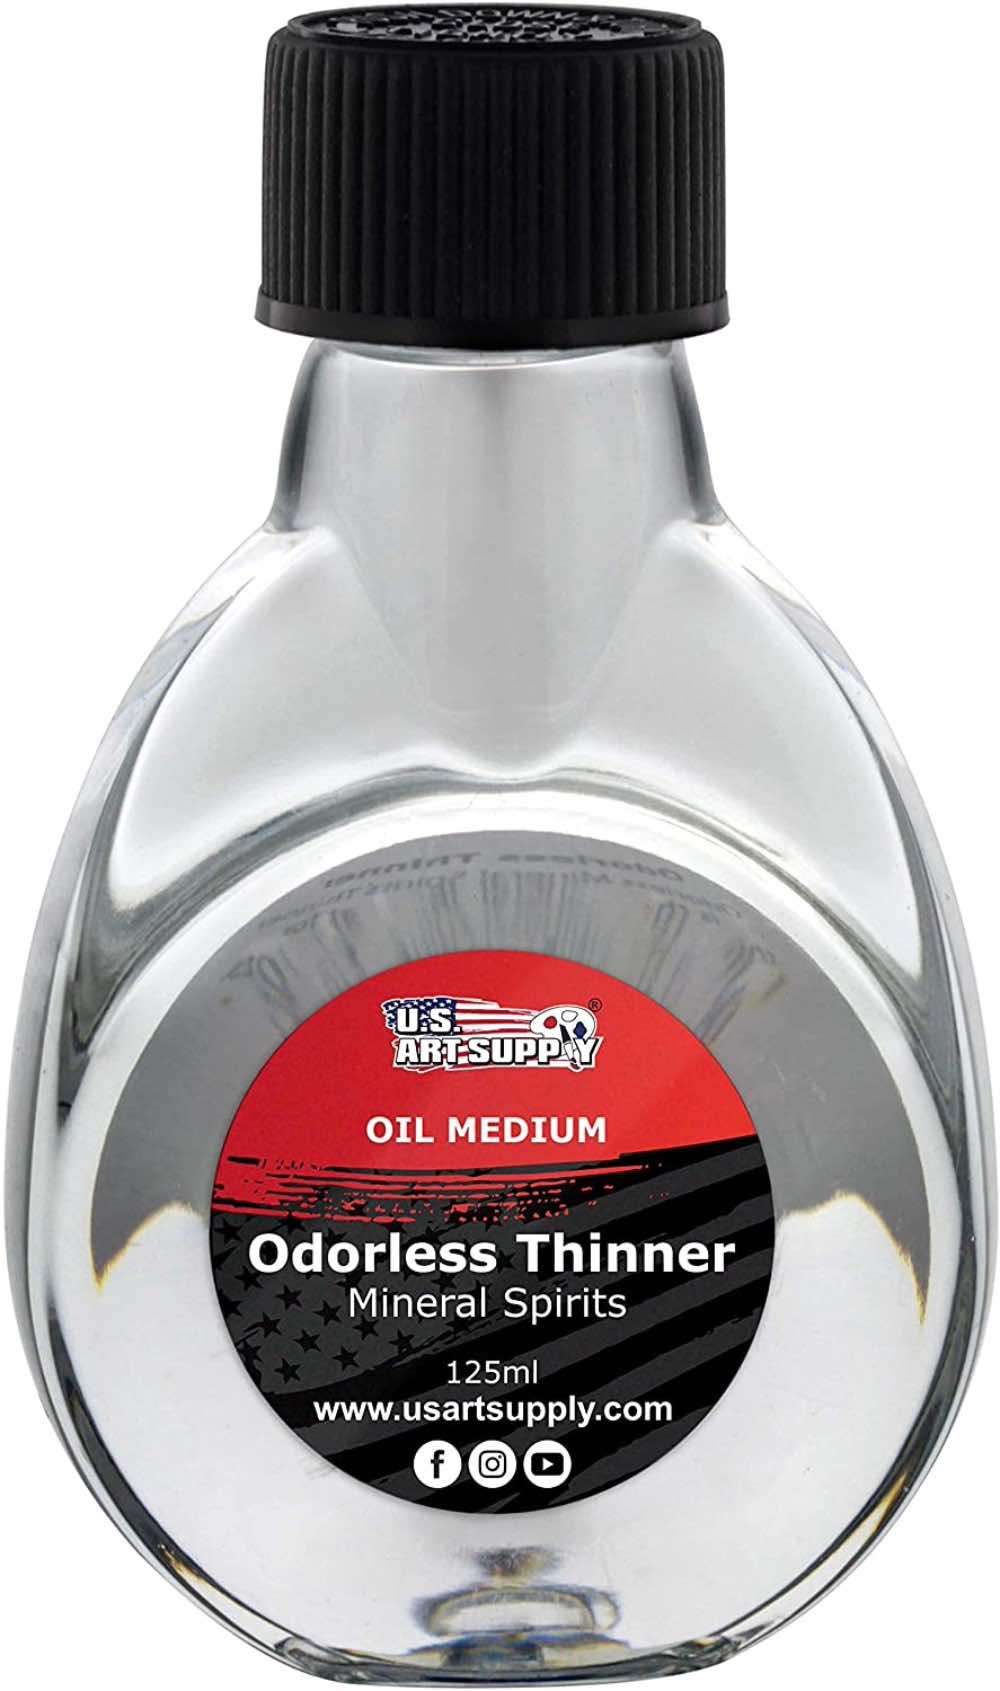 Odourless thinner (Mineral Spirit)